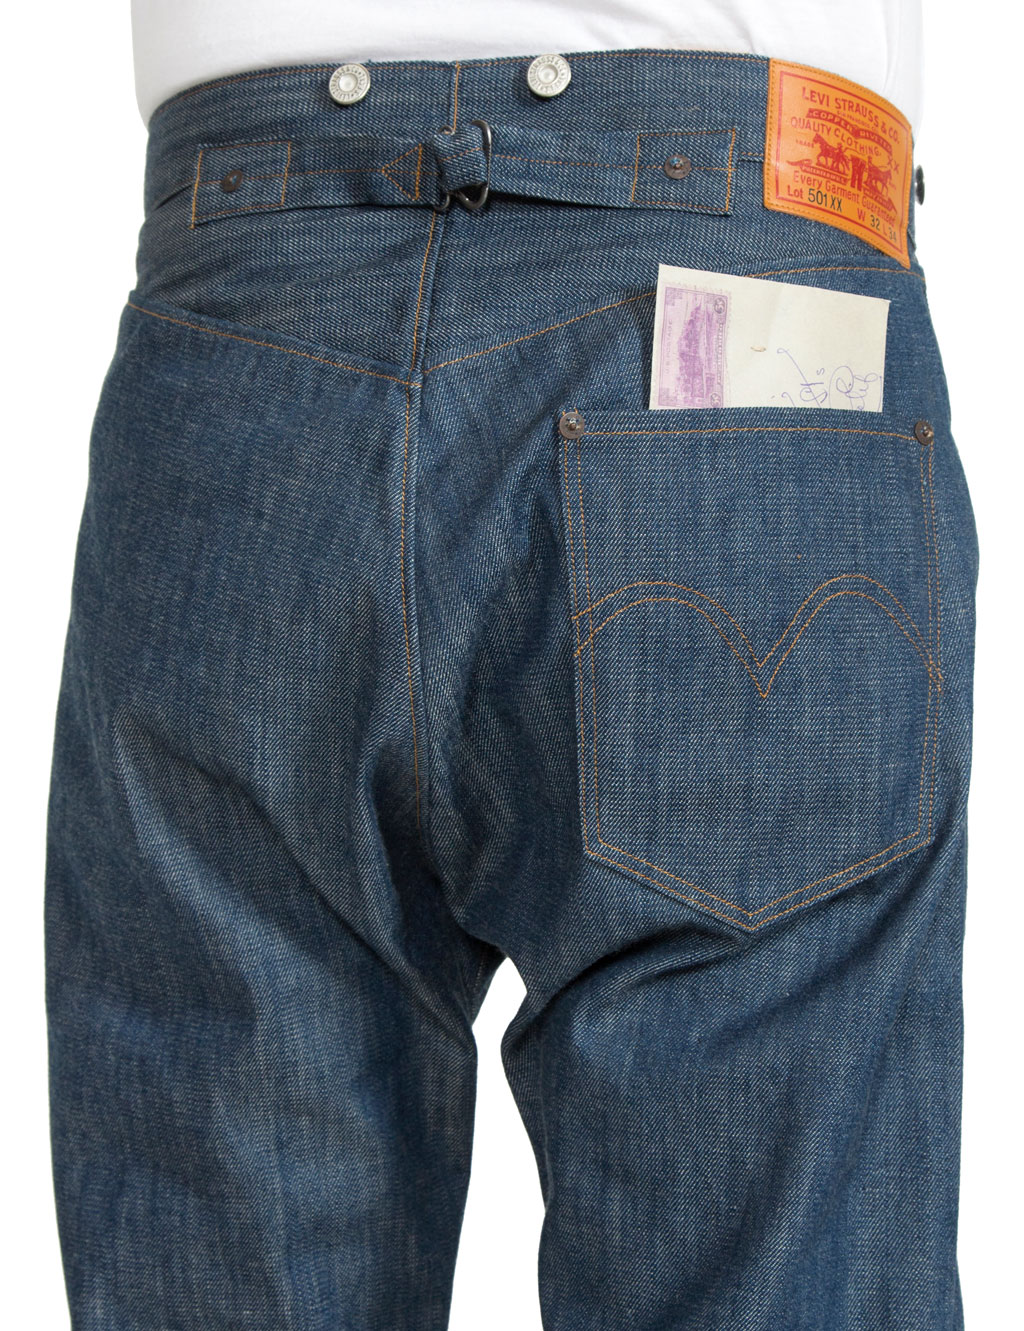 levi's vintage clothing jeans